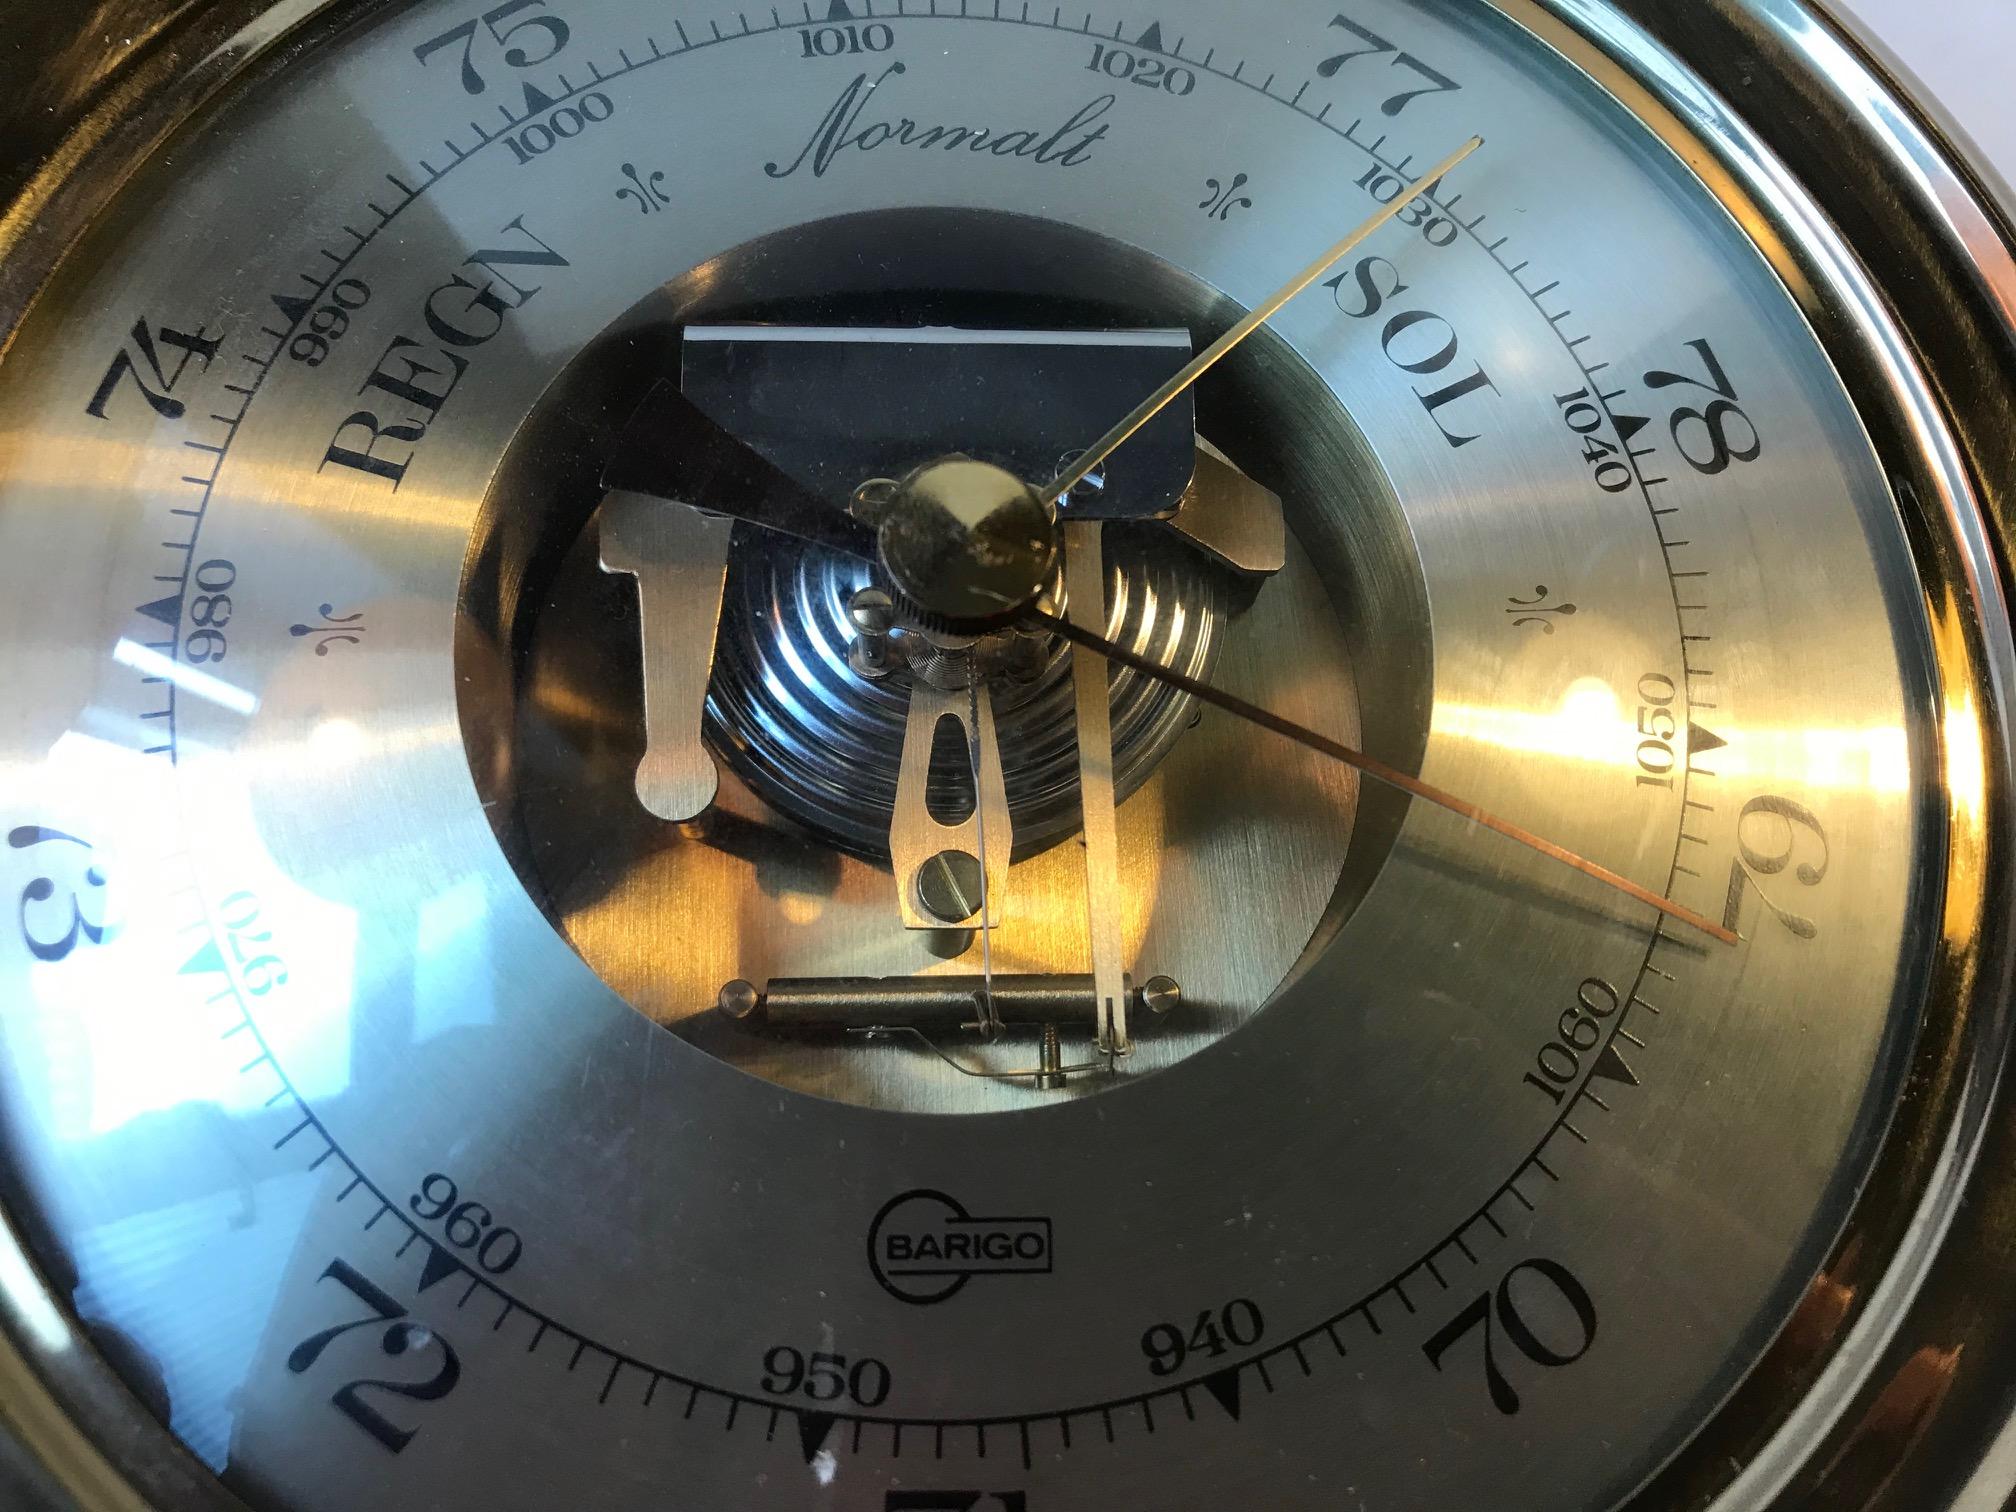 Baromètre et hygromètre vintage allemand - Instrument météorologique par Barigo en Allemagne. Il s'agit d'un baromètre d'aspect unique avec un mécanisme visible, un couvercle en verre à bulles et un bord en laiton massif. Sous l'hygromètre, on peut